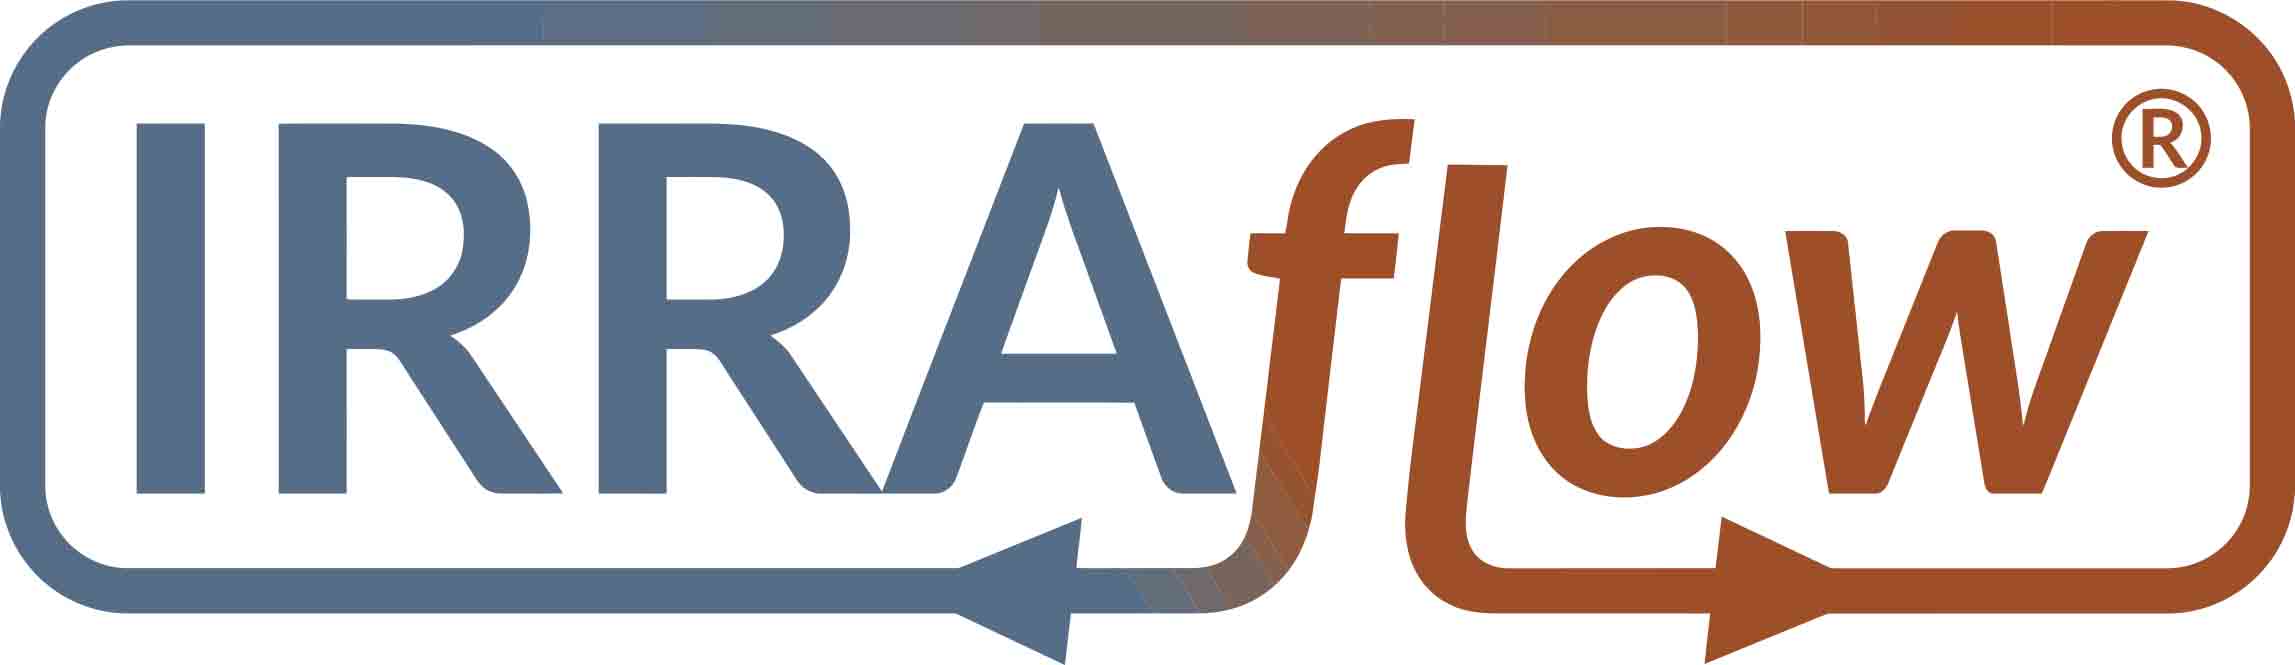 Neurological Fluid Management Technology - IRRAS IRRAFLOW logo